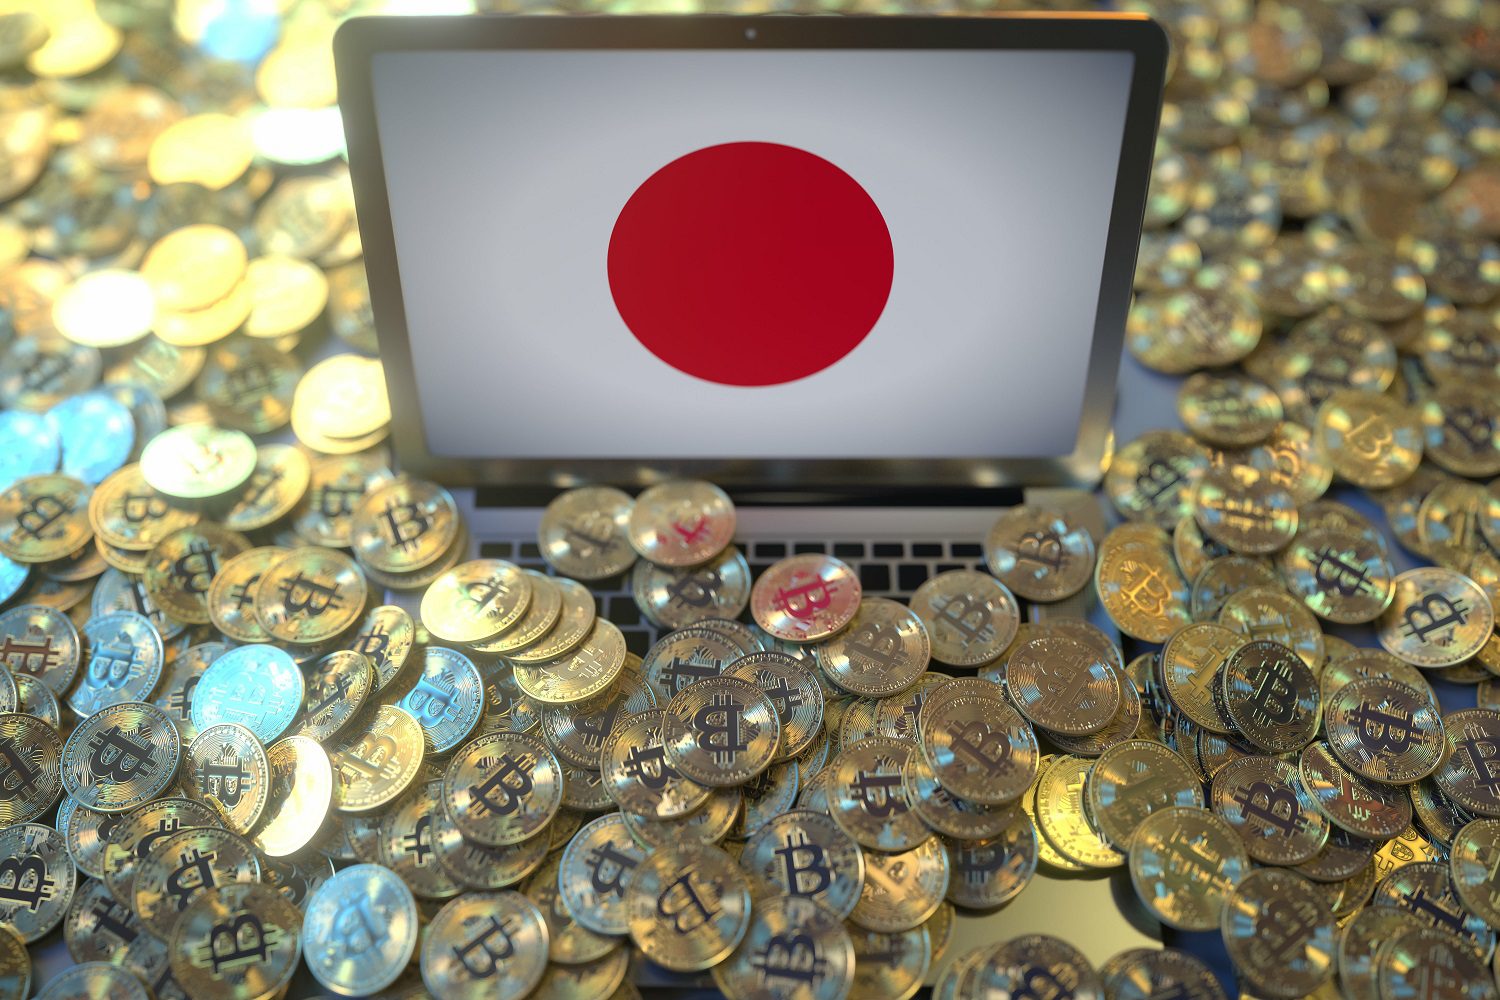 Una gran cantidad de fichas de metal de color dorado destinadas a representar Bitcoin se encuentran esparcidas alrededor de una computadora portátil cuya pantalla muestra la bandera japonesa.